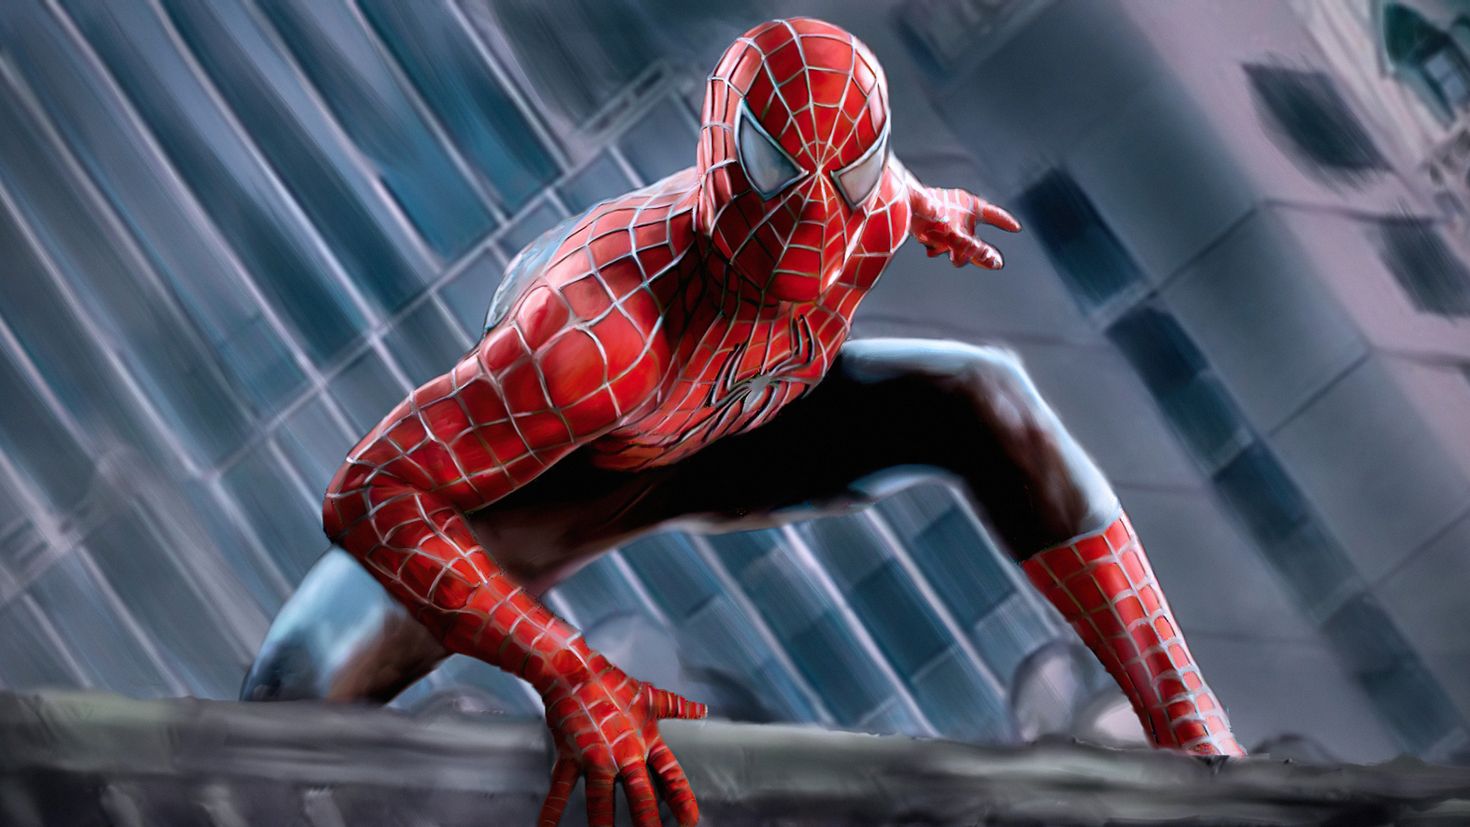 Spider man Raimi Suit